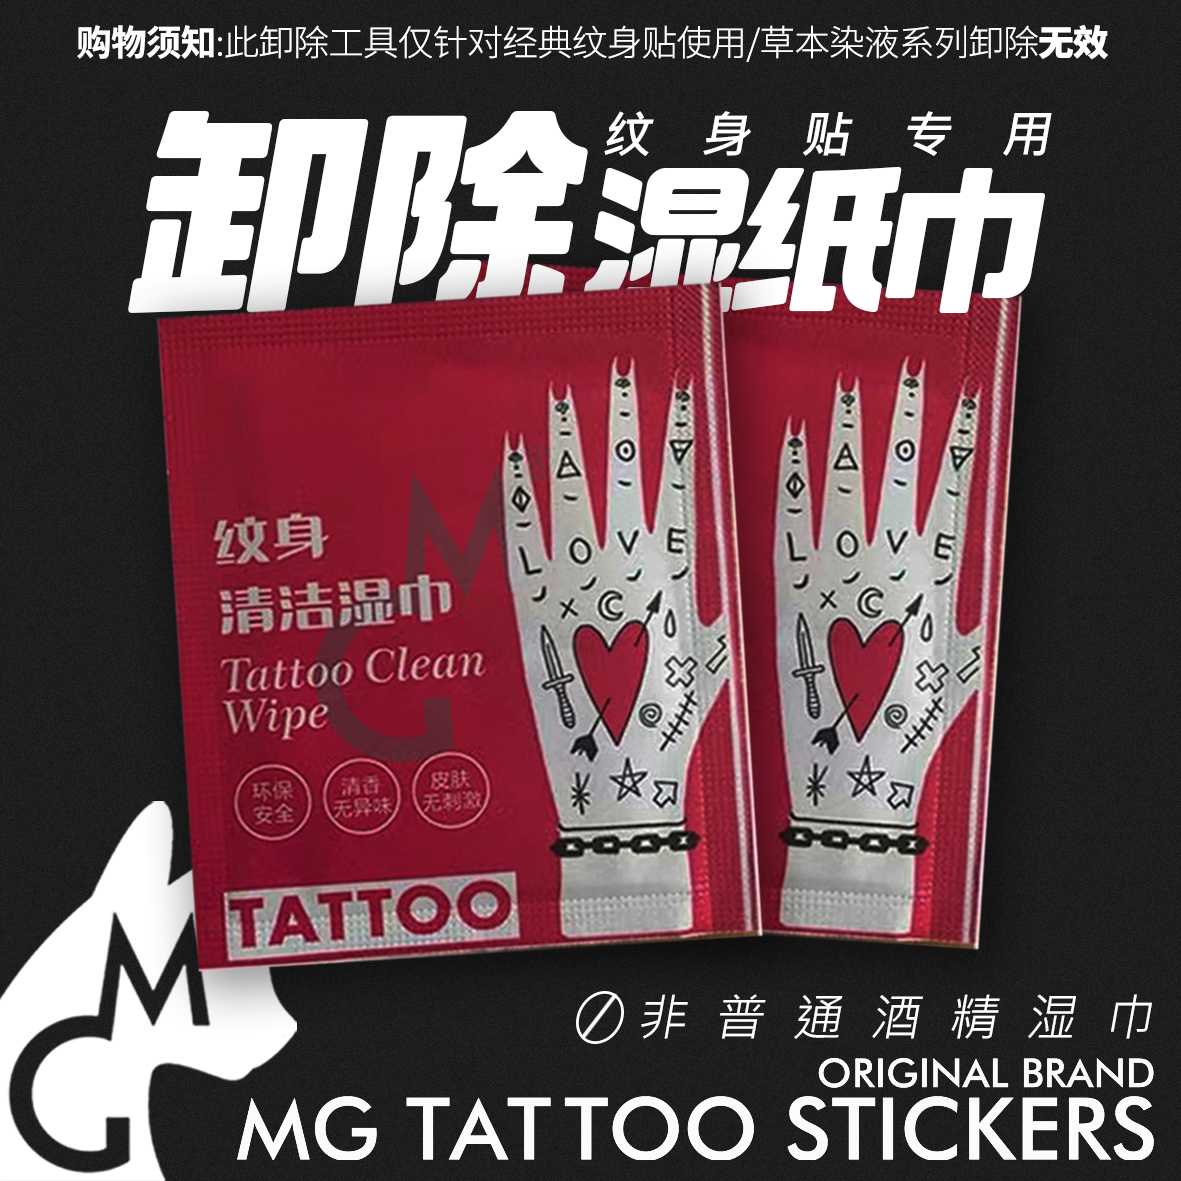 MG TATTOO 辅助用品  纹身贴纸专用卸除湿巾 便捷快速卸除纹身贴